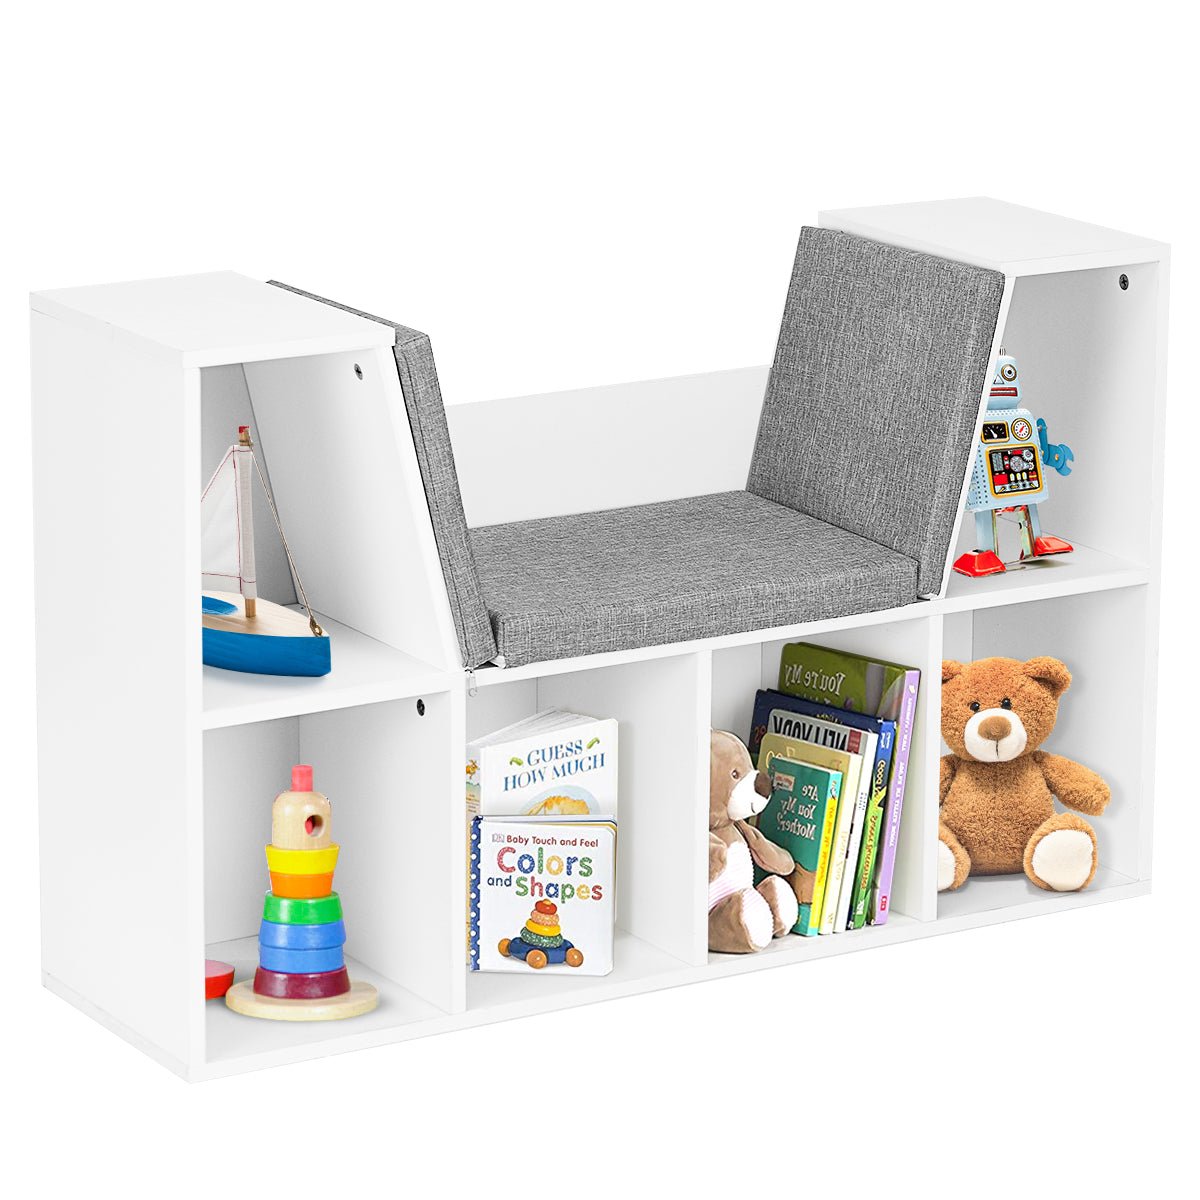 Children's Wood Toy Organizer - 5 Cubbies & Drawers, Smart Storage